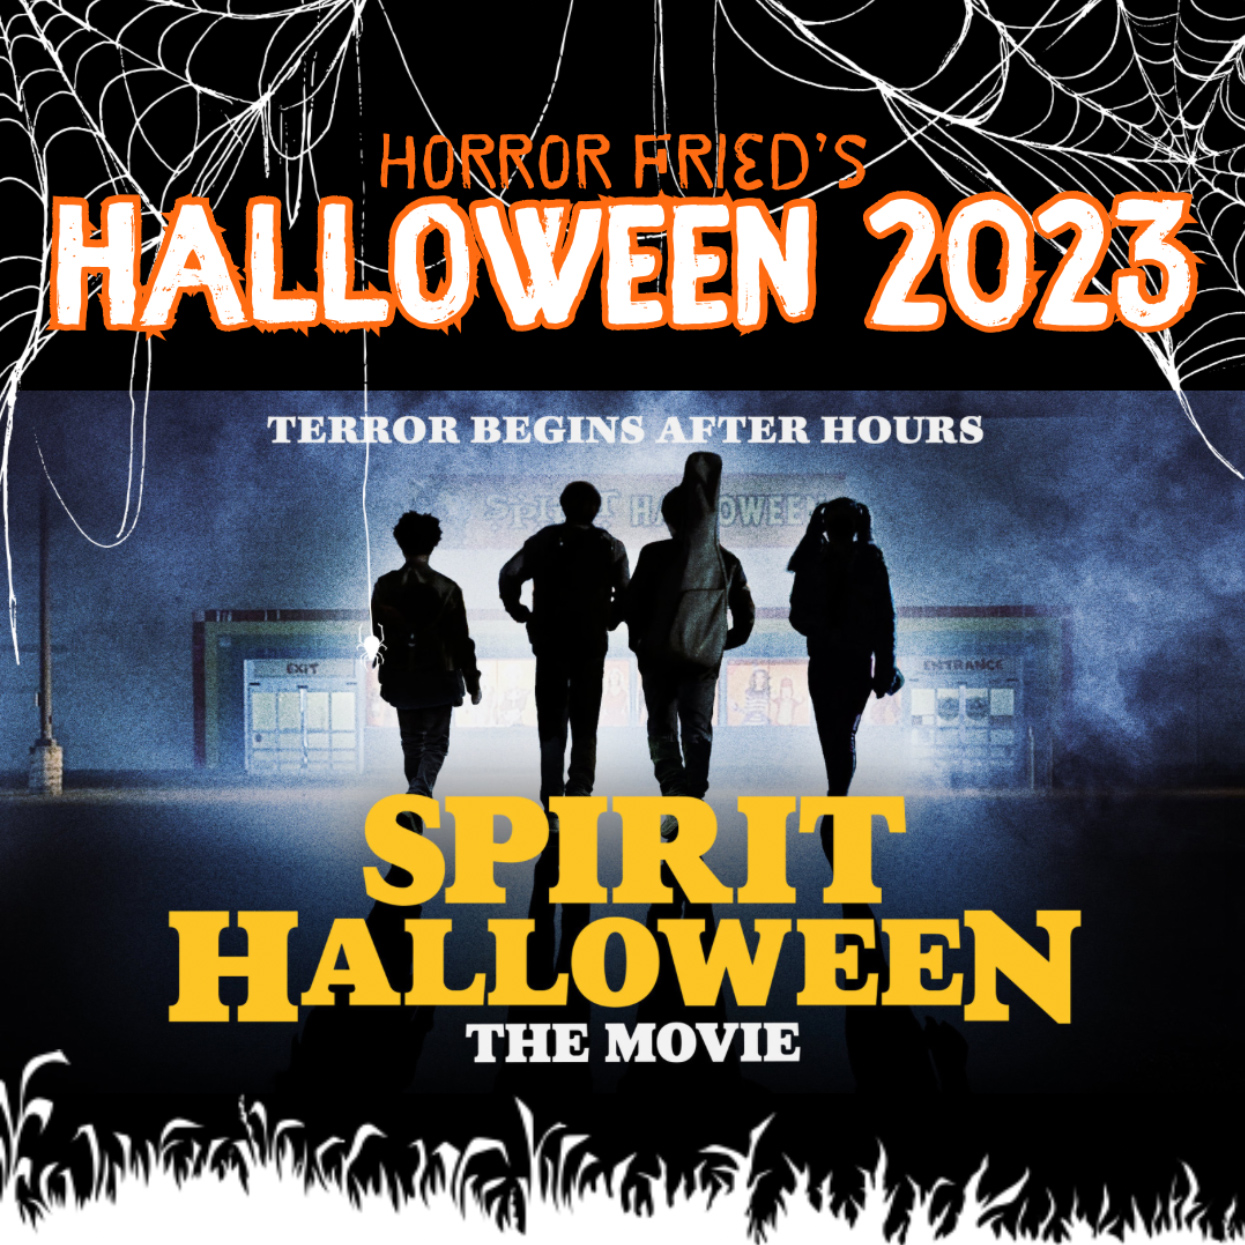 Halloween 2023: Spirit Halloween